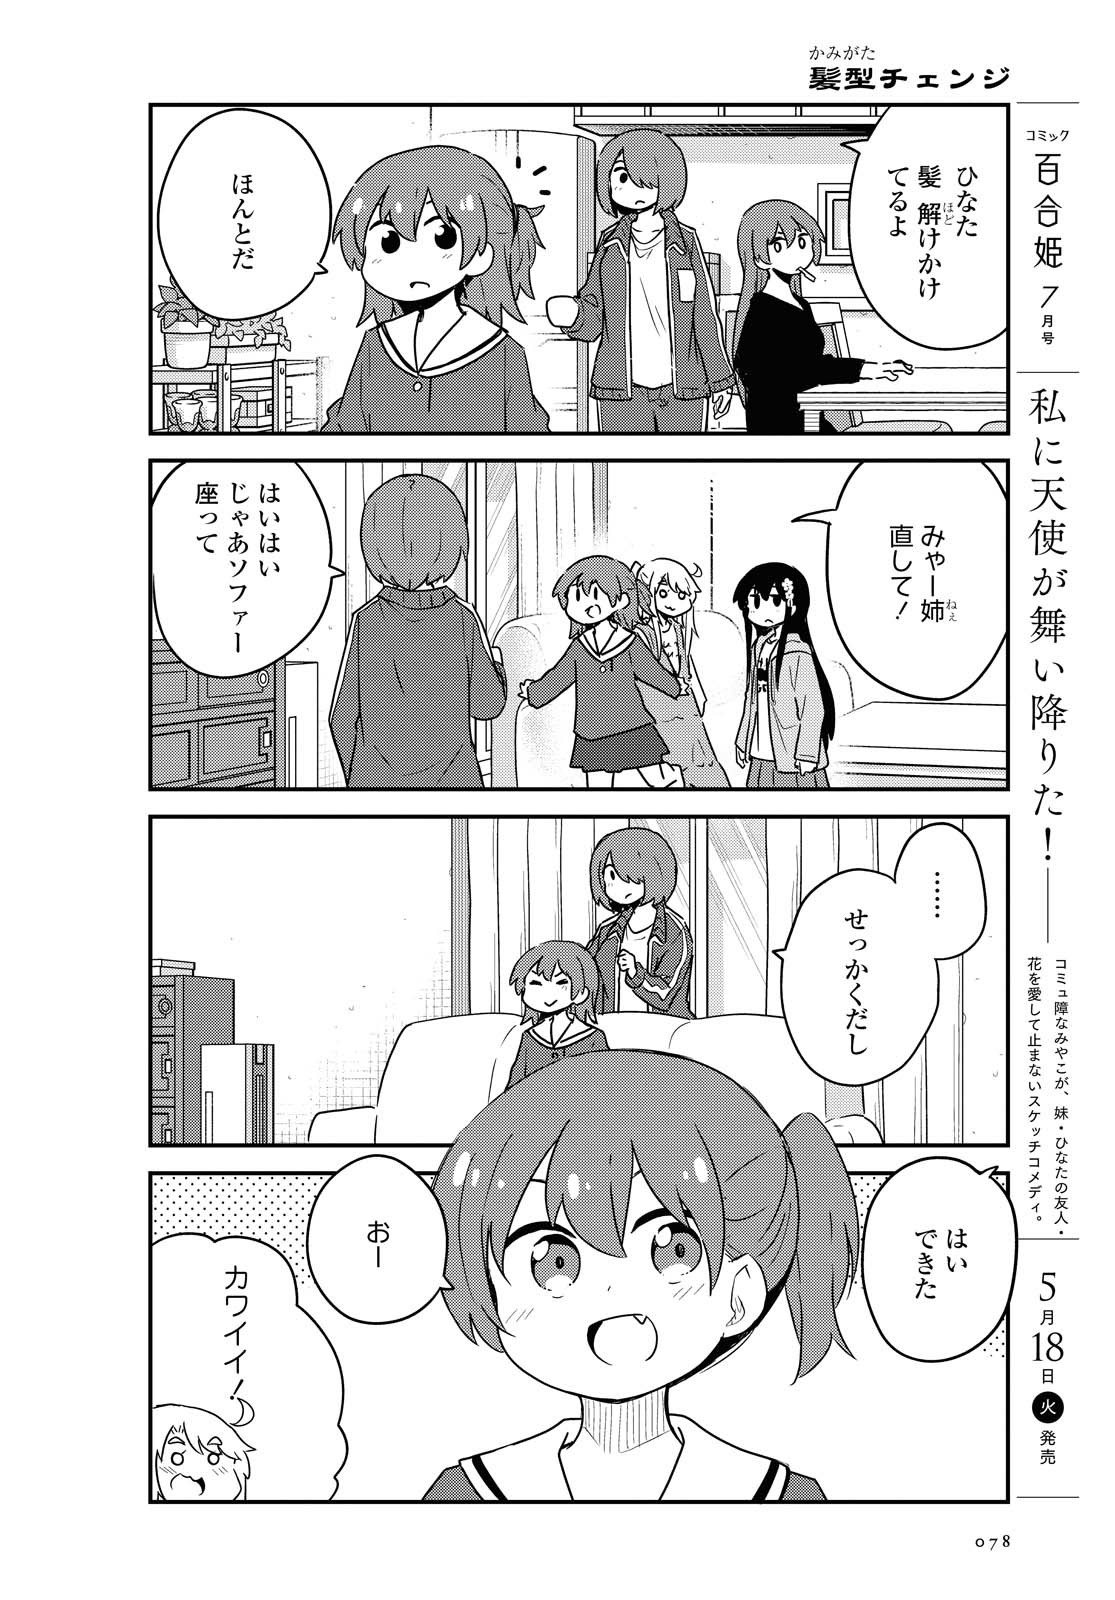 Watashi ni Tenshi ga Maiorita! - Chapter 81 - Page 2